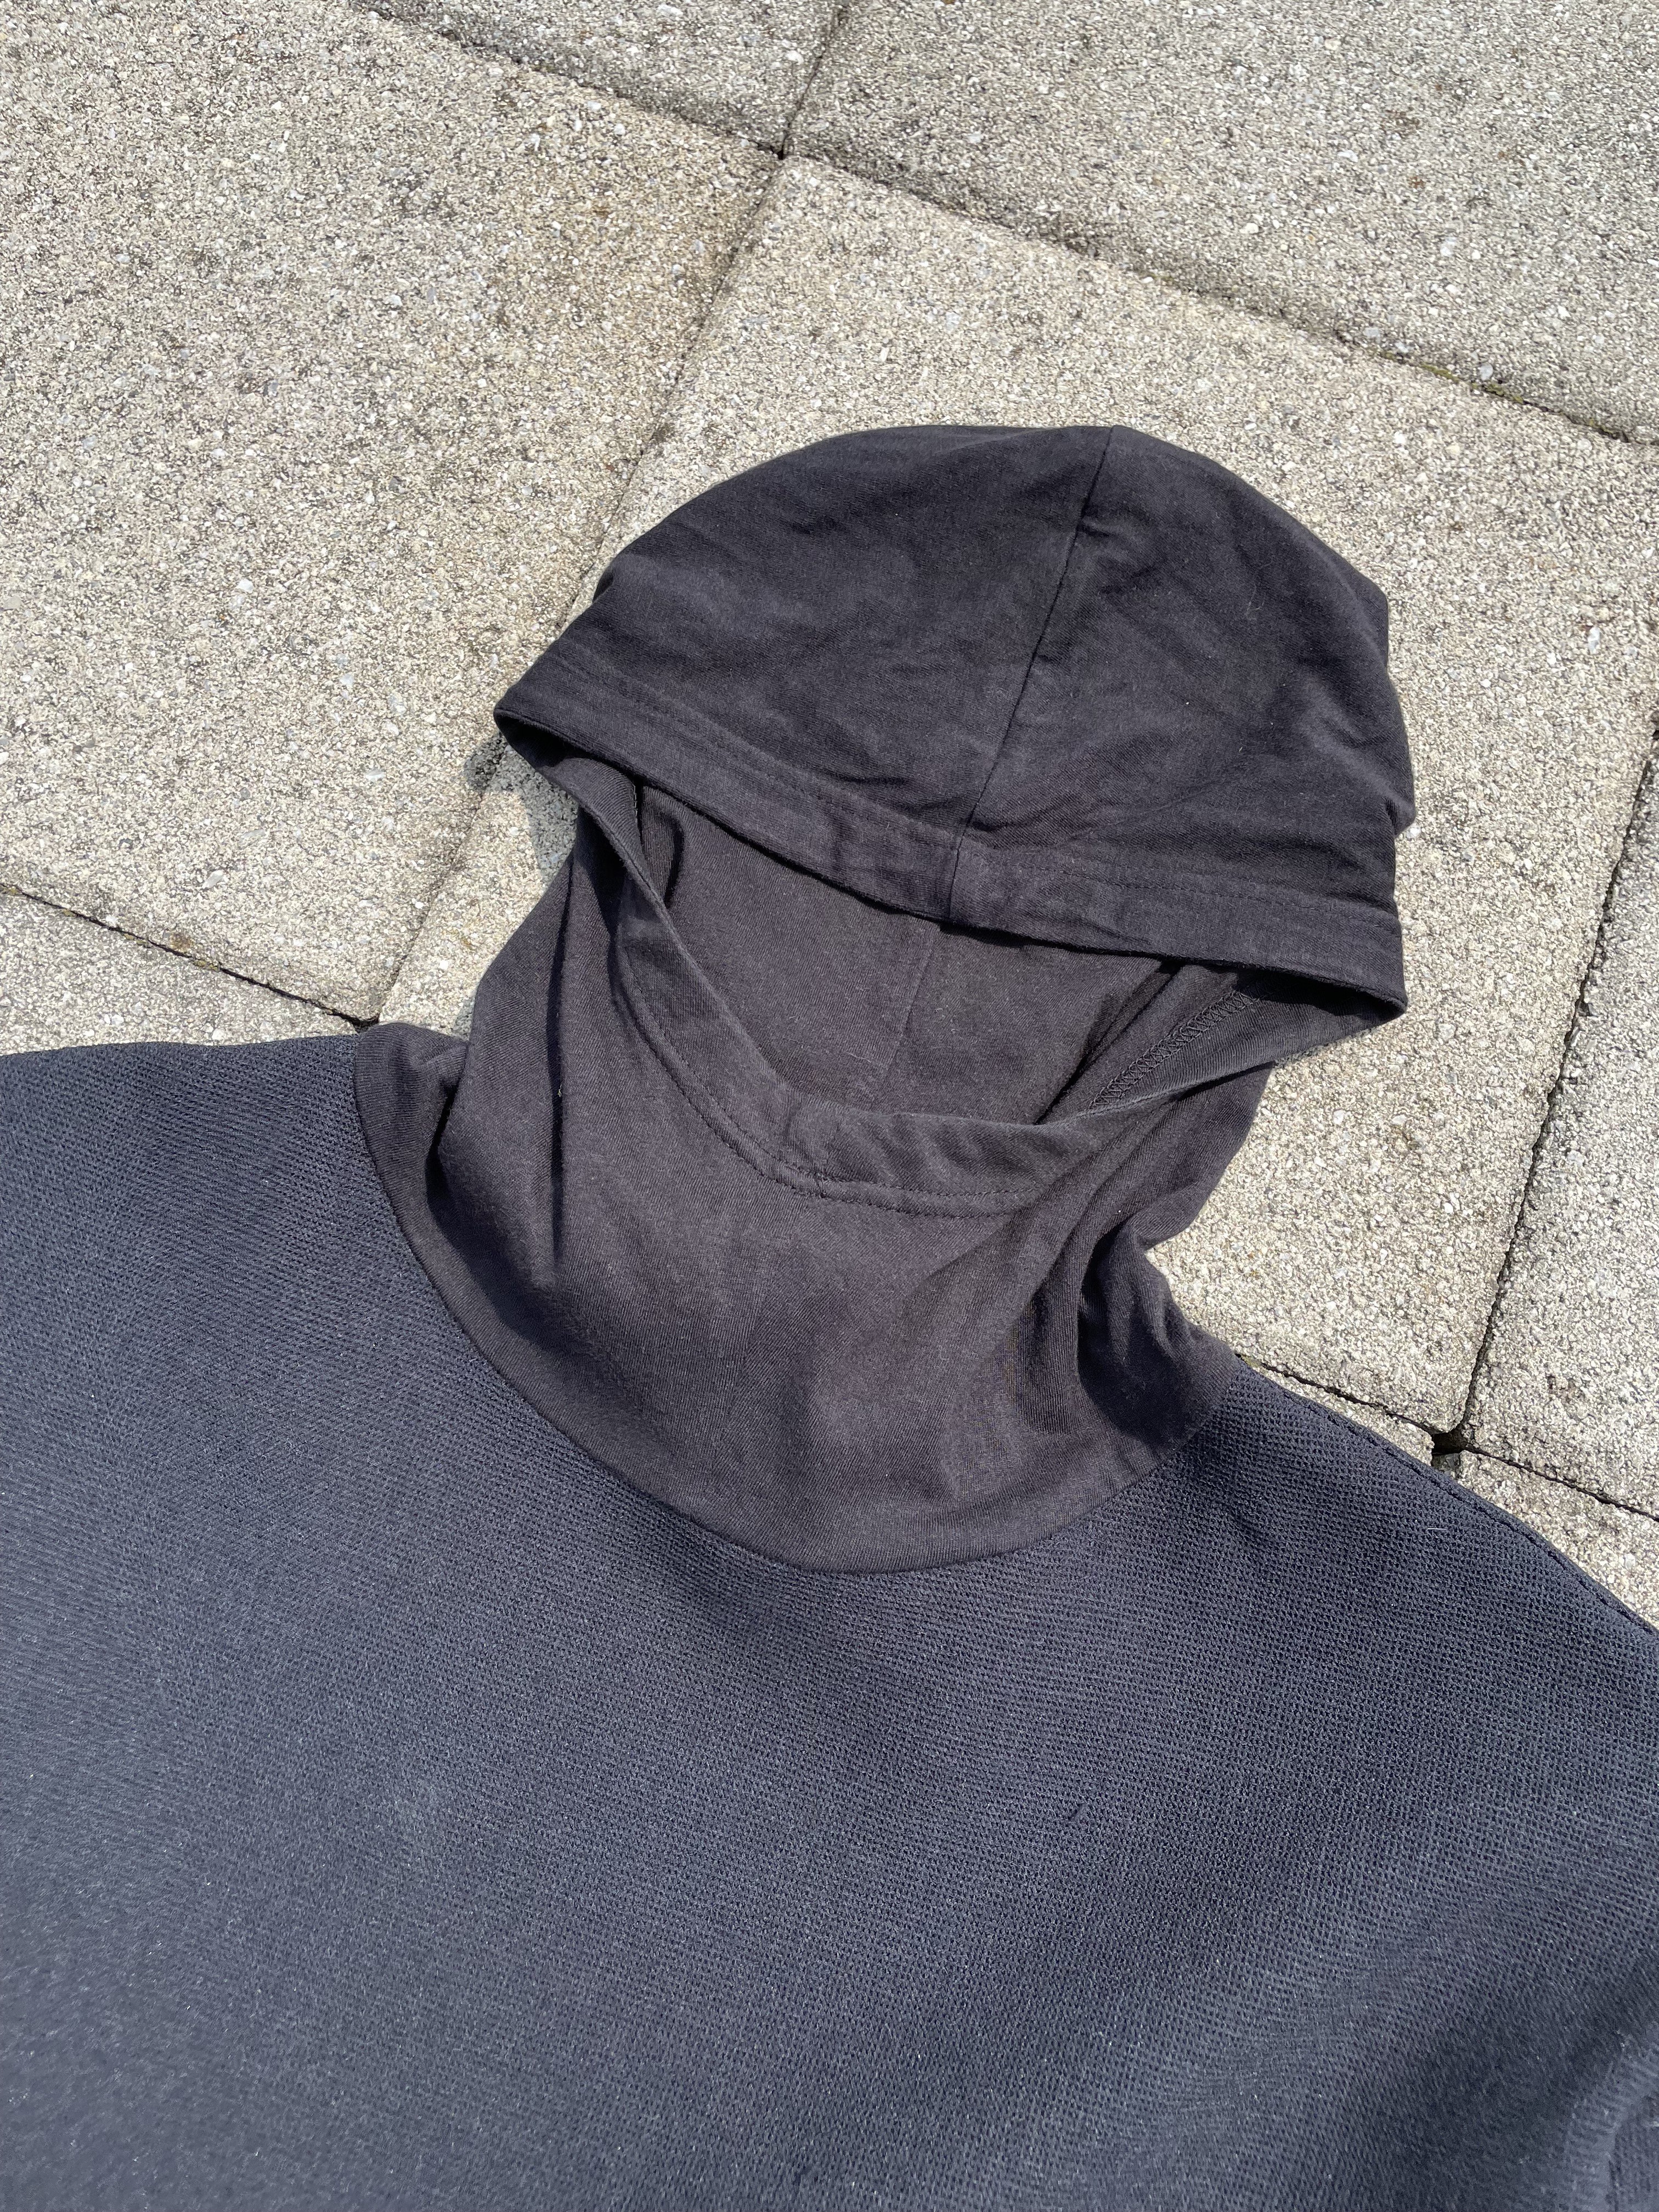 SAMPLE N. Hoolywood Ninja facemask tech hoodie black - 2